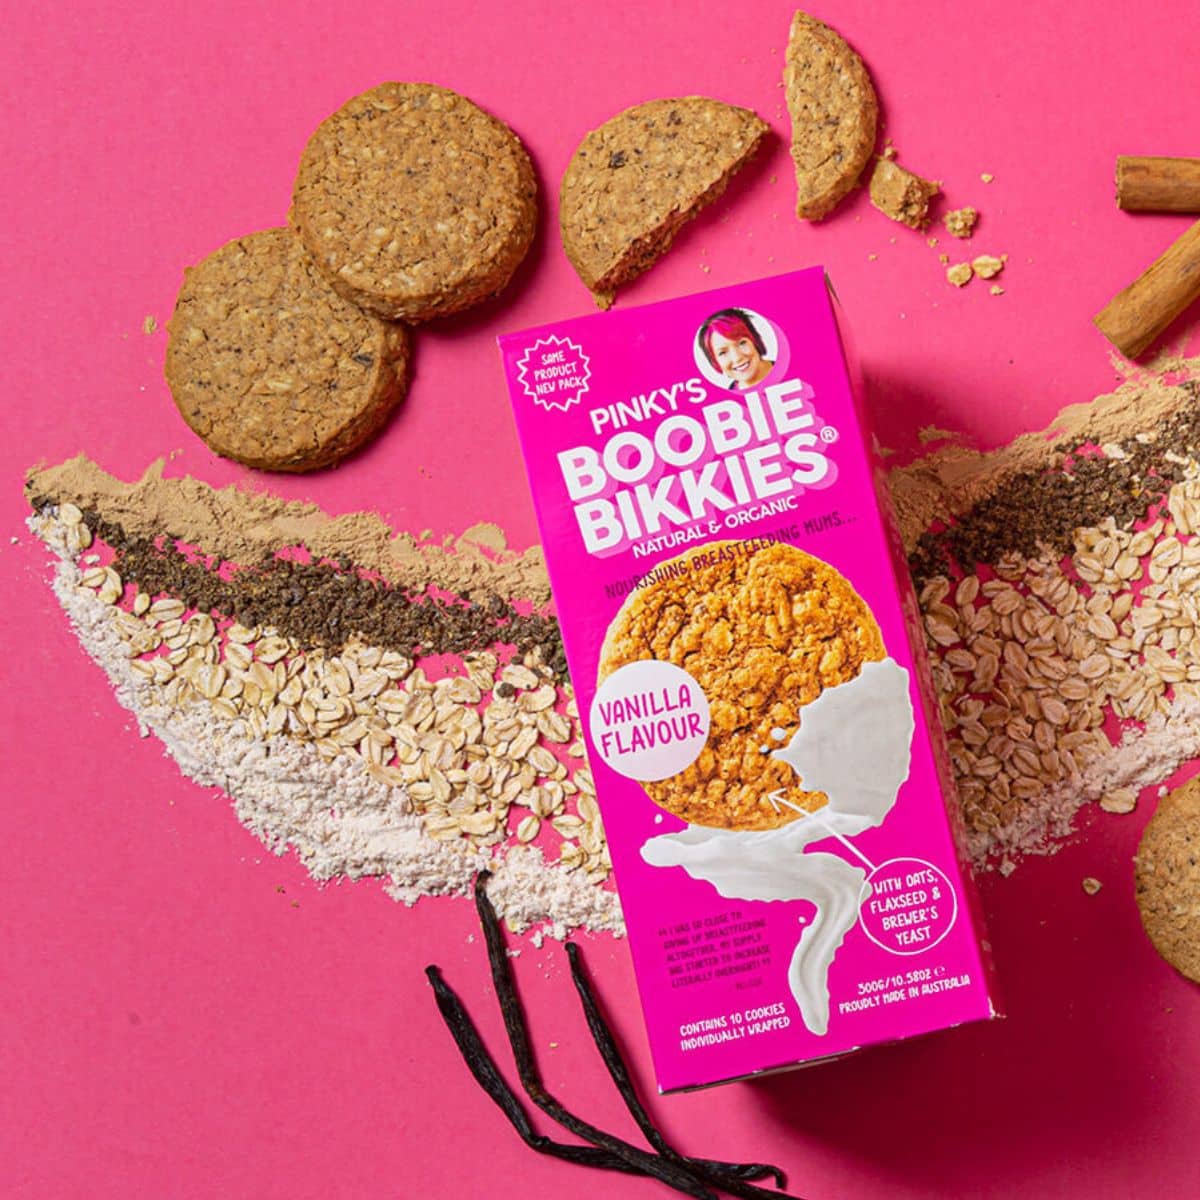 Pinky's Boobie Bikkies - Organic Oat and Vanilla Flavour